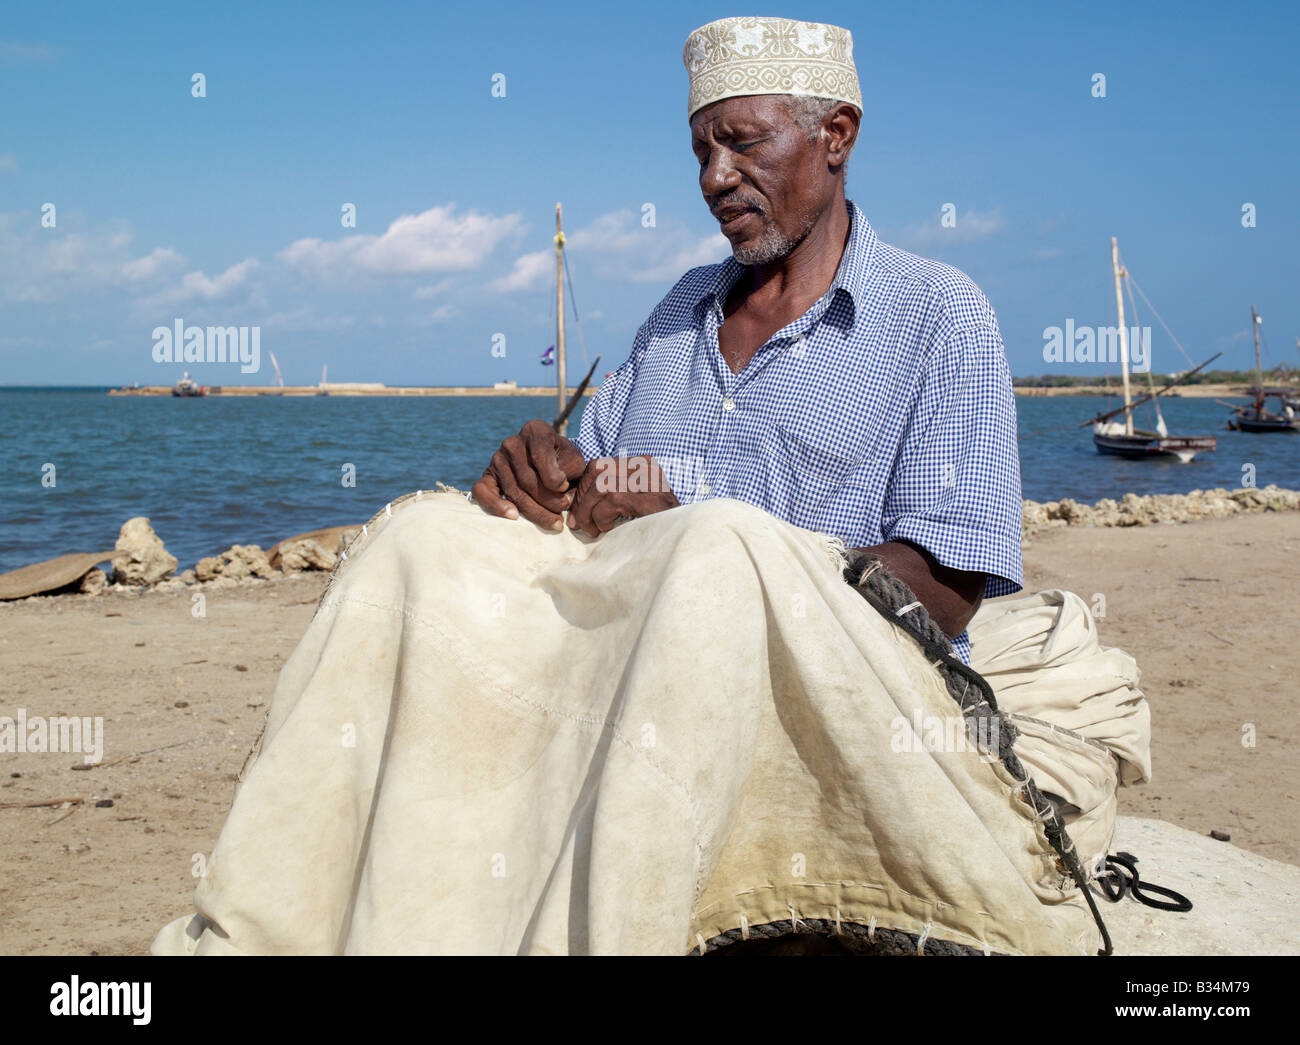 Kenya. A fisherman repairs the sail of his wooden sailing boat, known as mashua, along the waterfront of Kisingitini, a natural Stock Photo